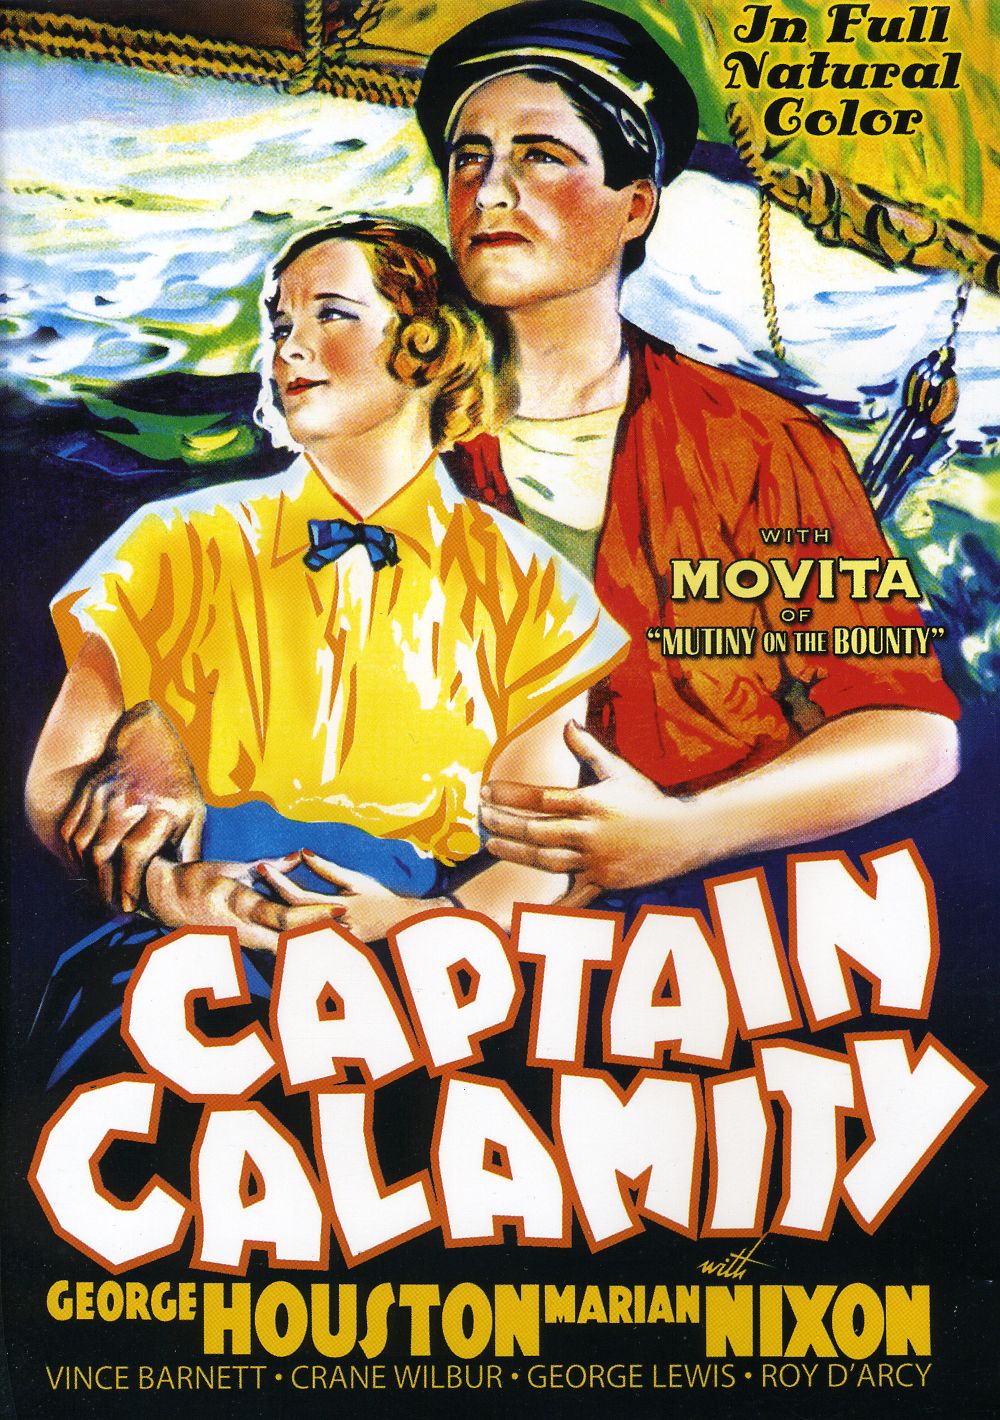 CAPTAIN CALAMITY (1936)